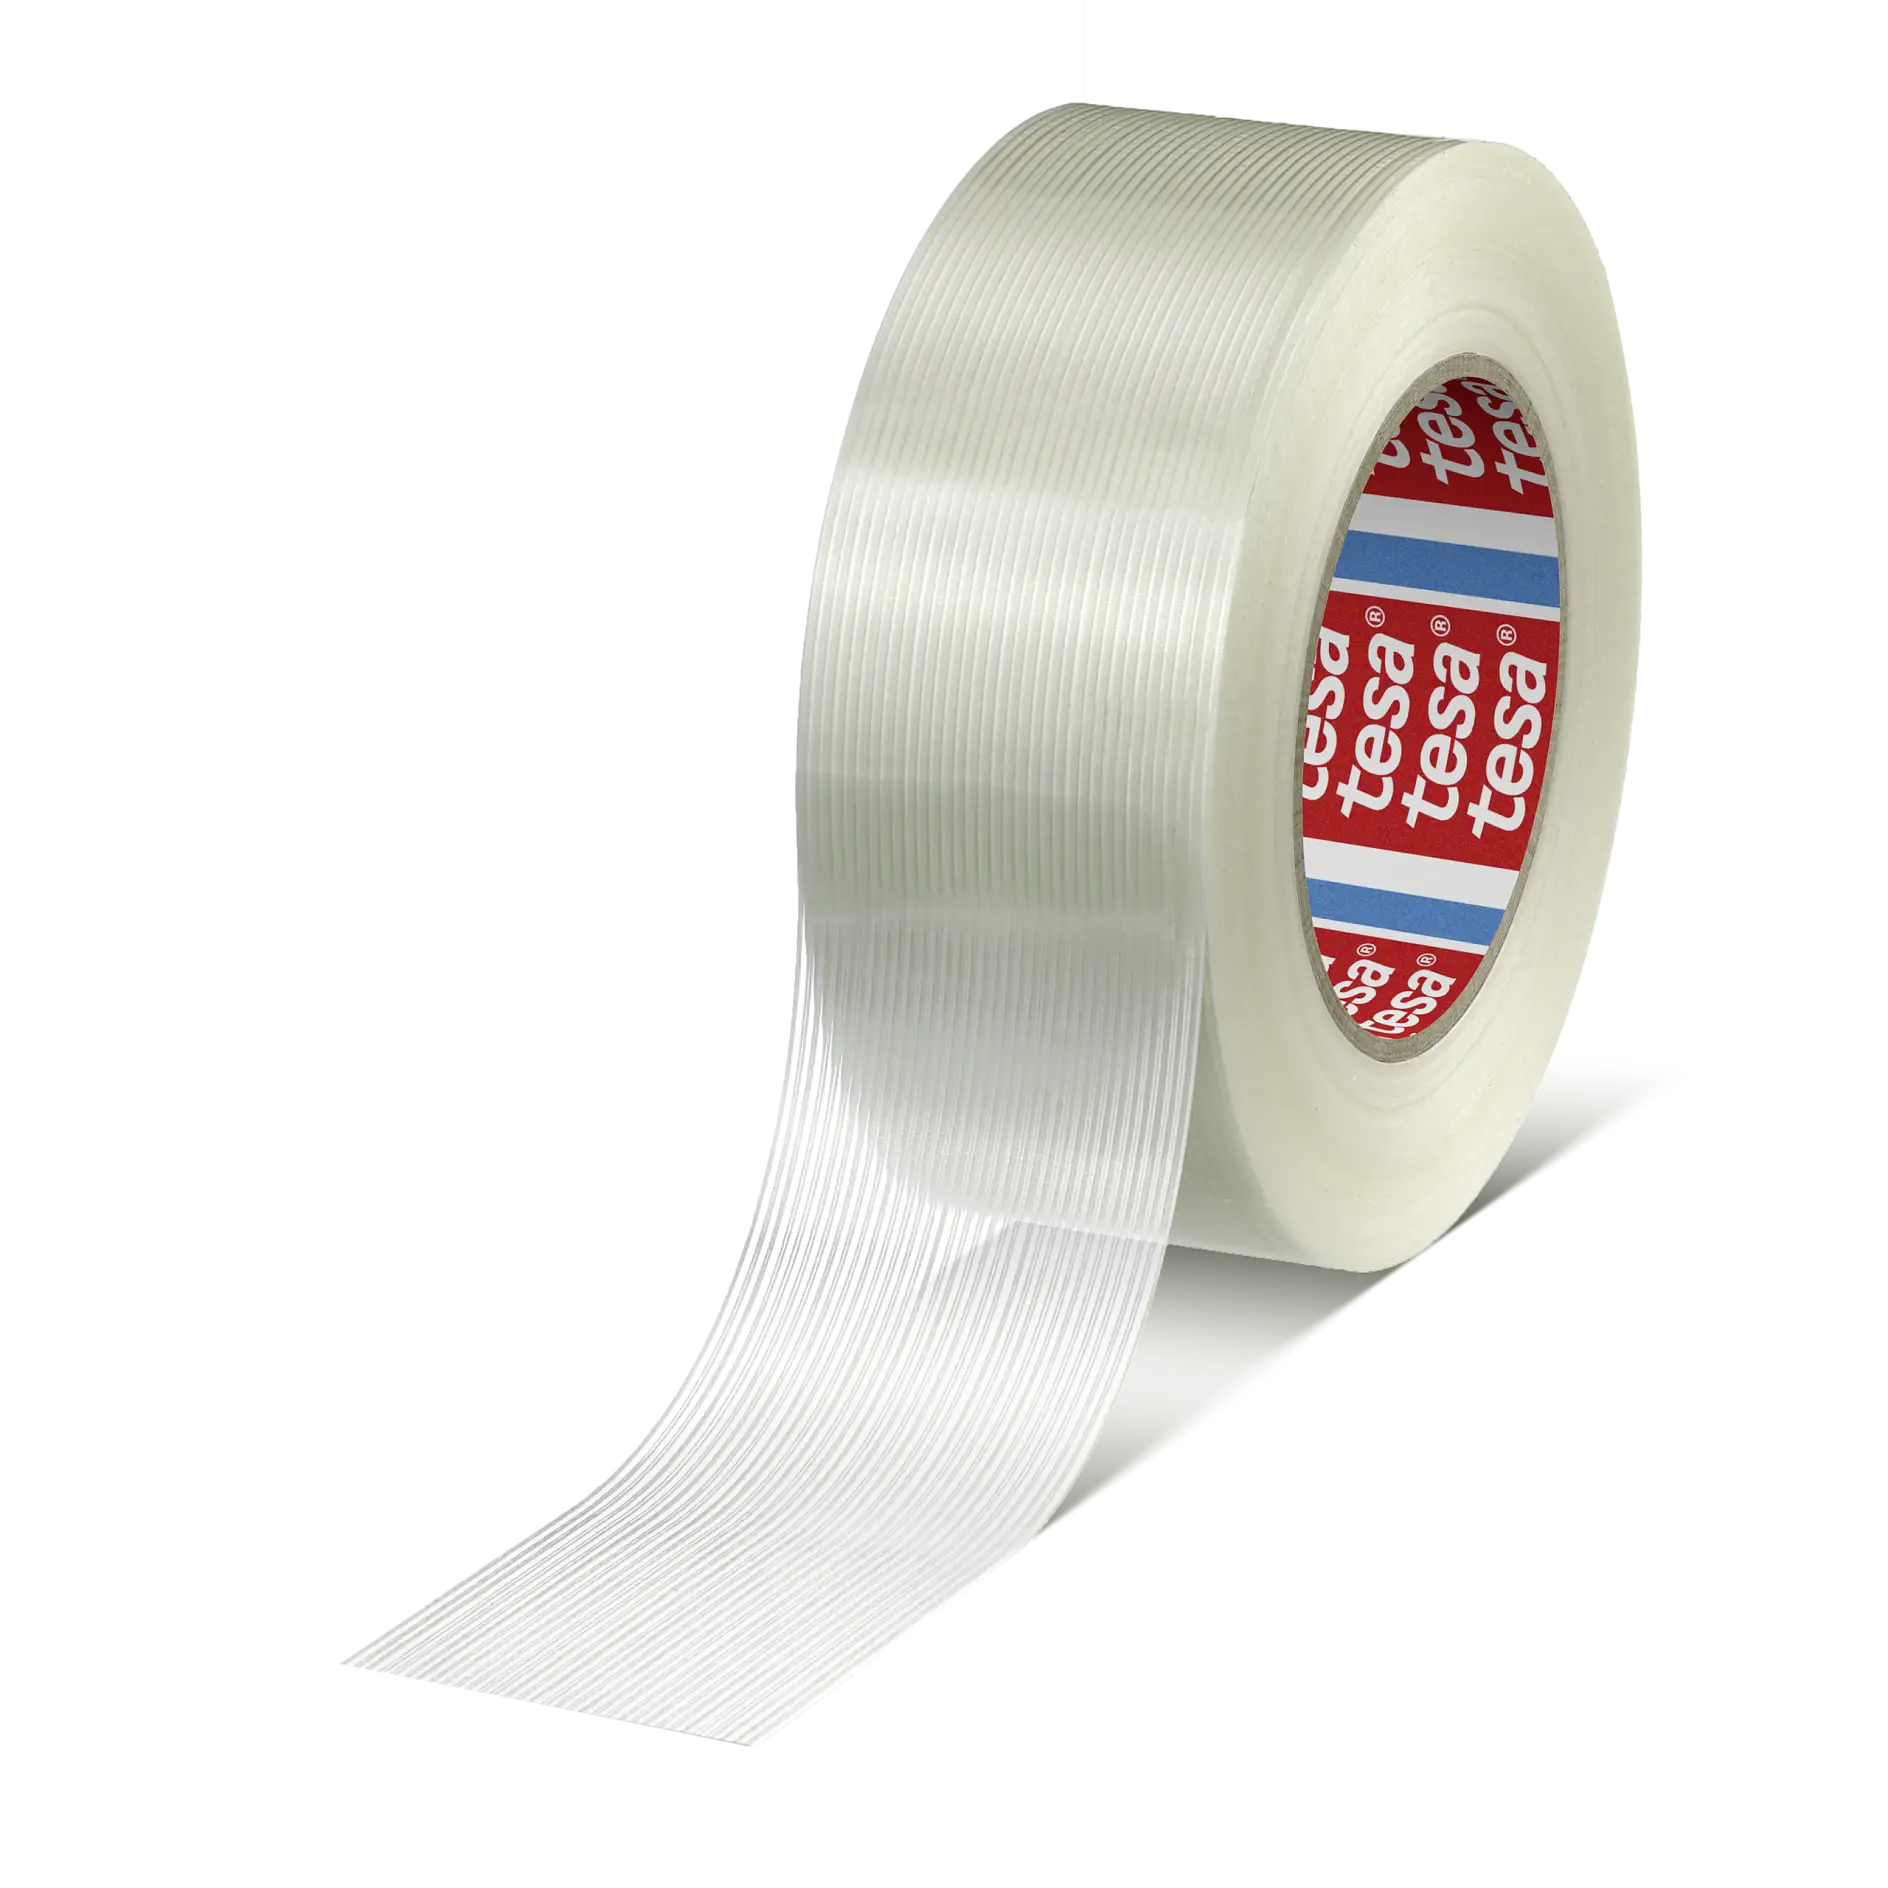 53315 표준 필라멘트 테이프 (Standard Filament Tape)